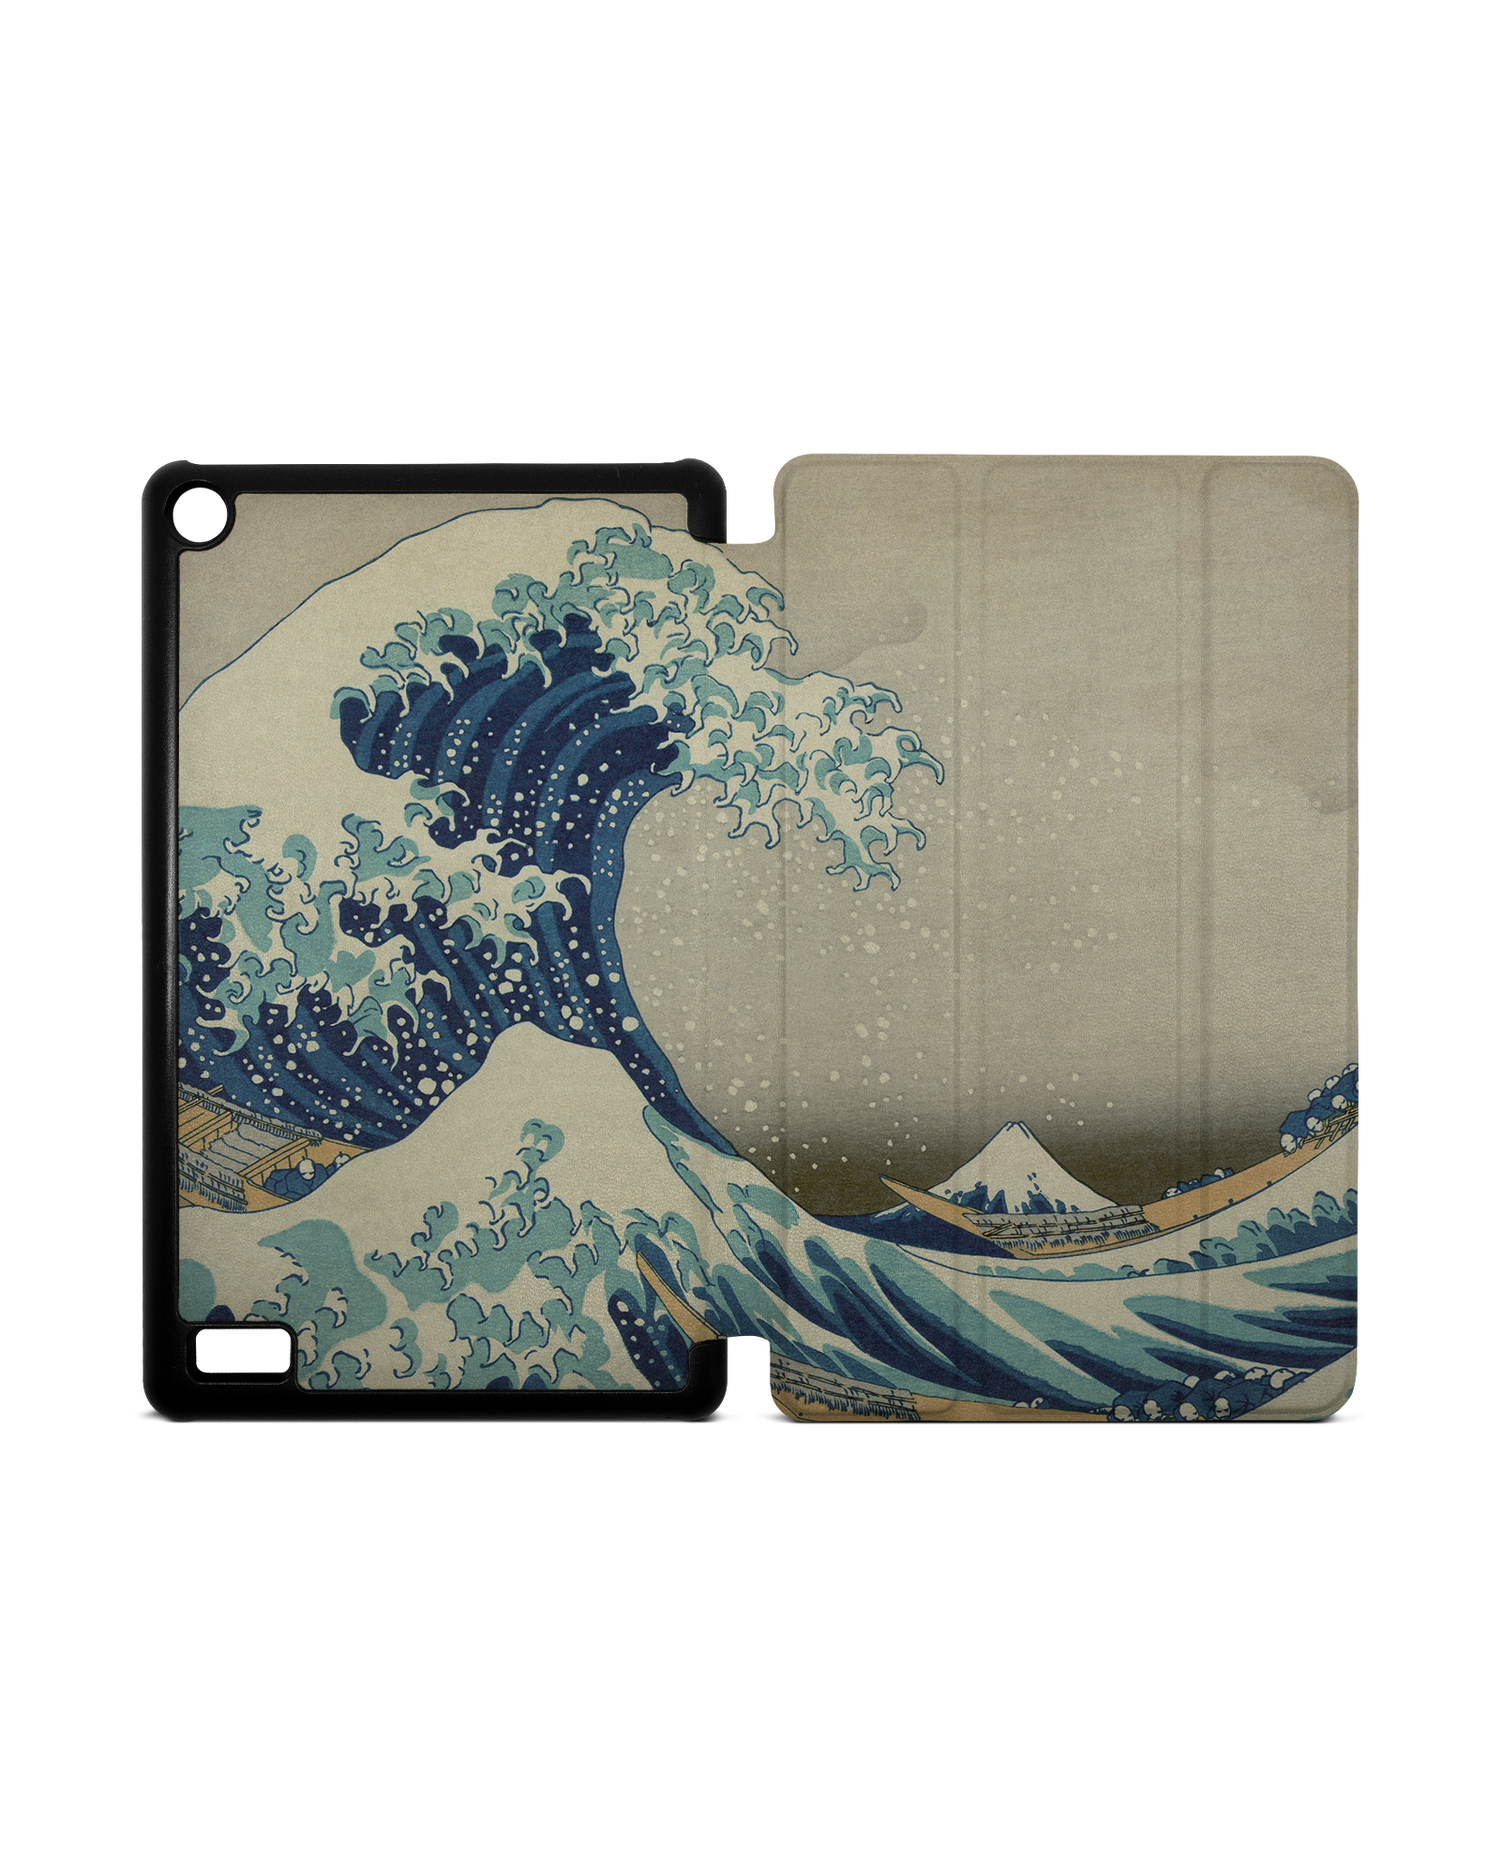 Great Wave Off Kanagawa By Hokusai Tablet Smart Case für Amazon Fire 7: Aufgeklappt